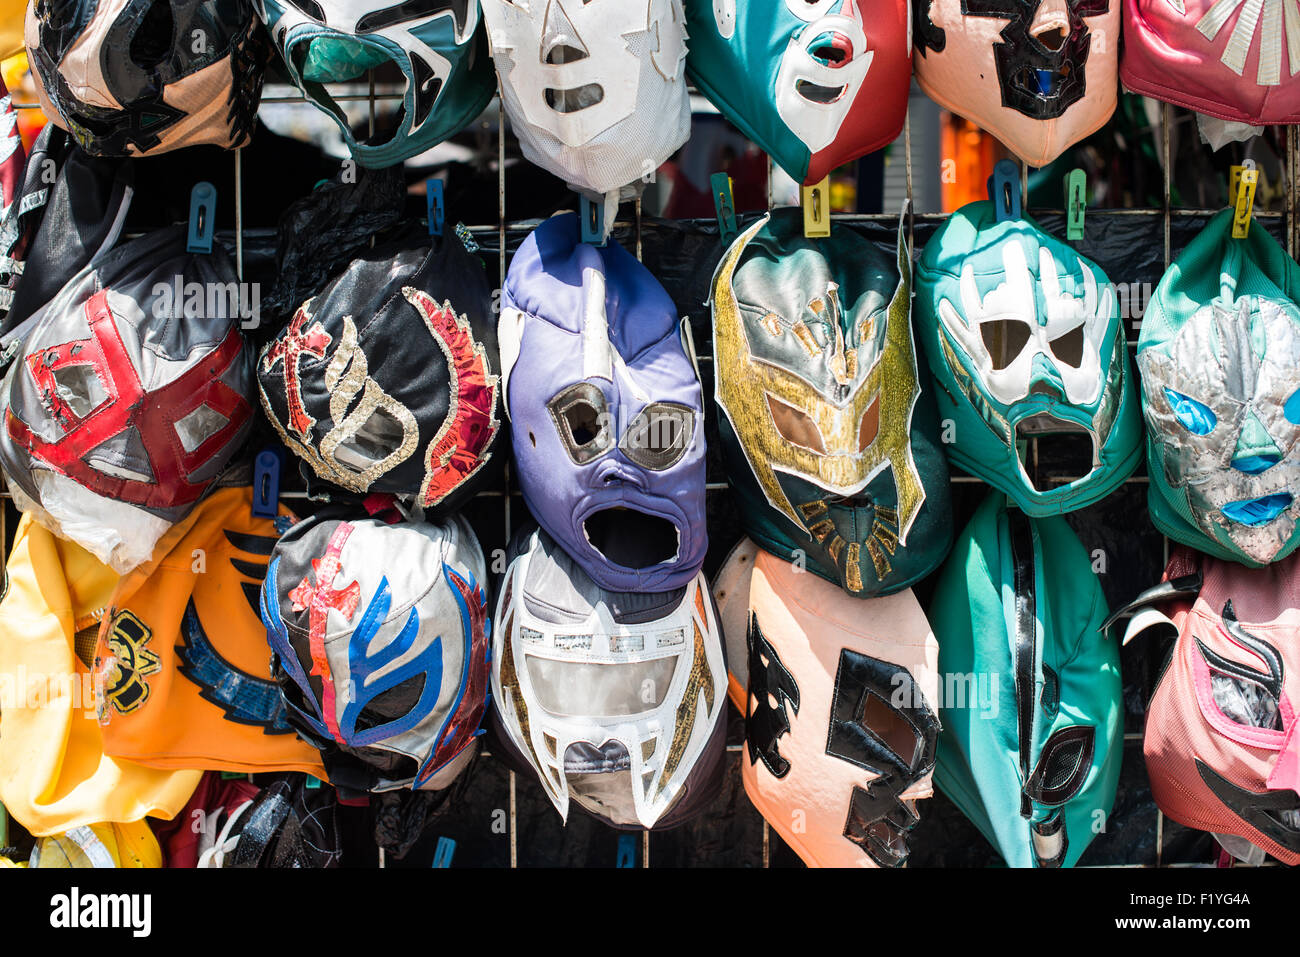 Ciudad de México, México - Máscaras de disfraces en euskera de Chapultepec, un gran parque público y popular en el centro de la Ciudad de México. Foto de stock